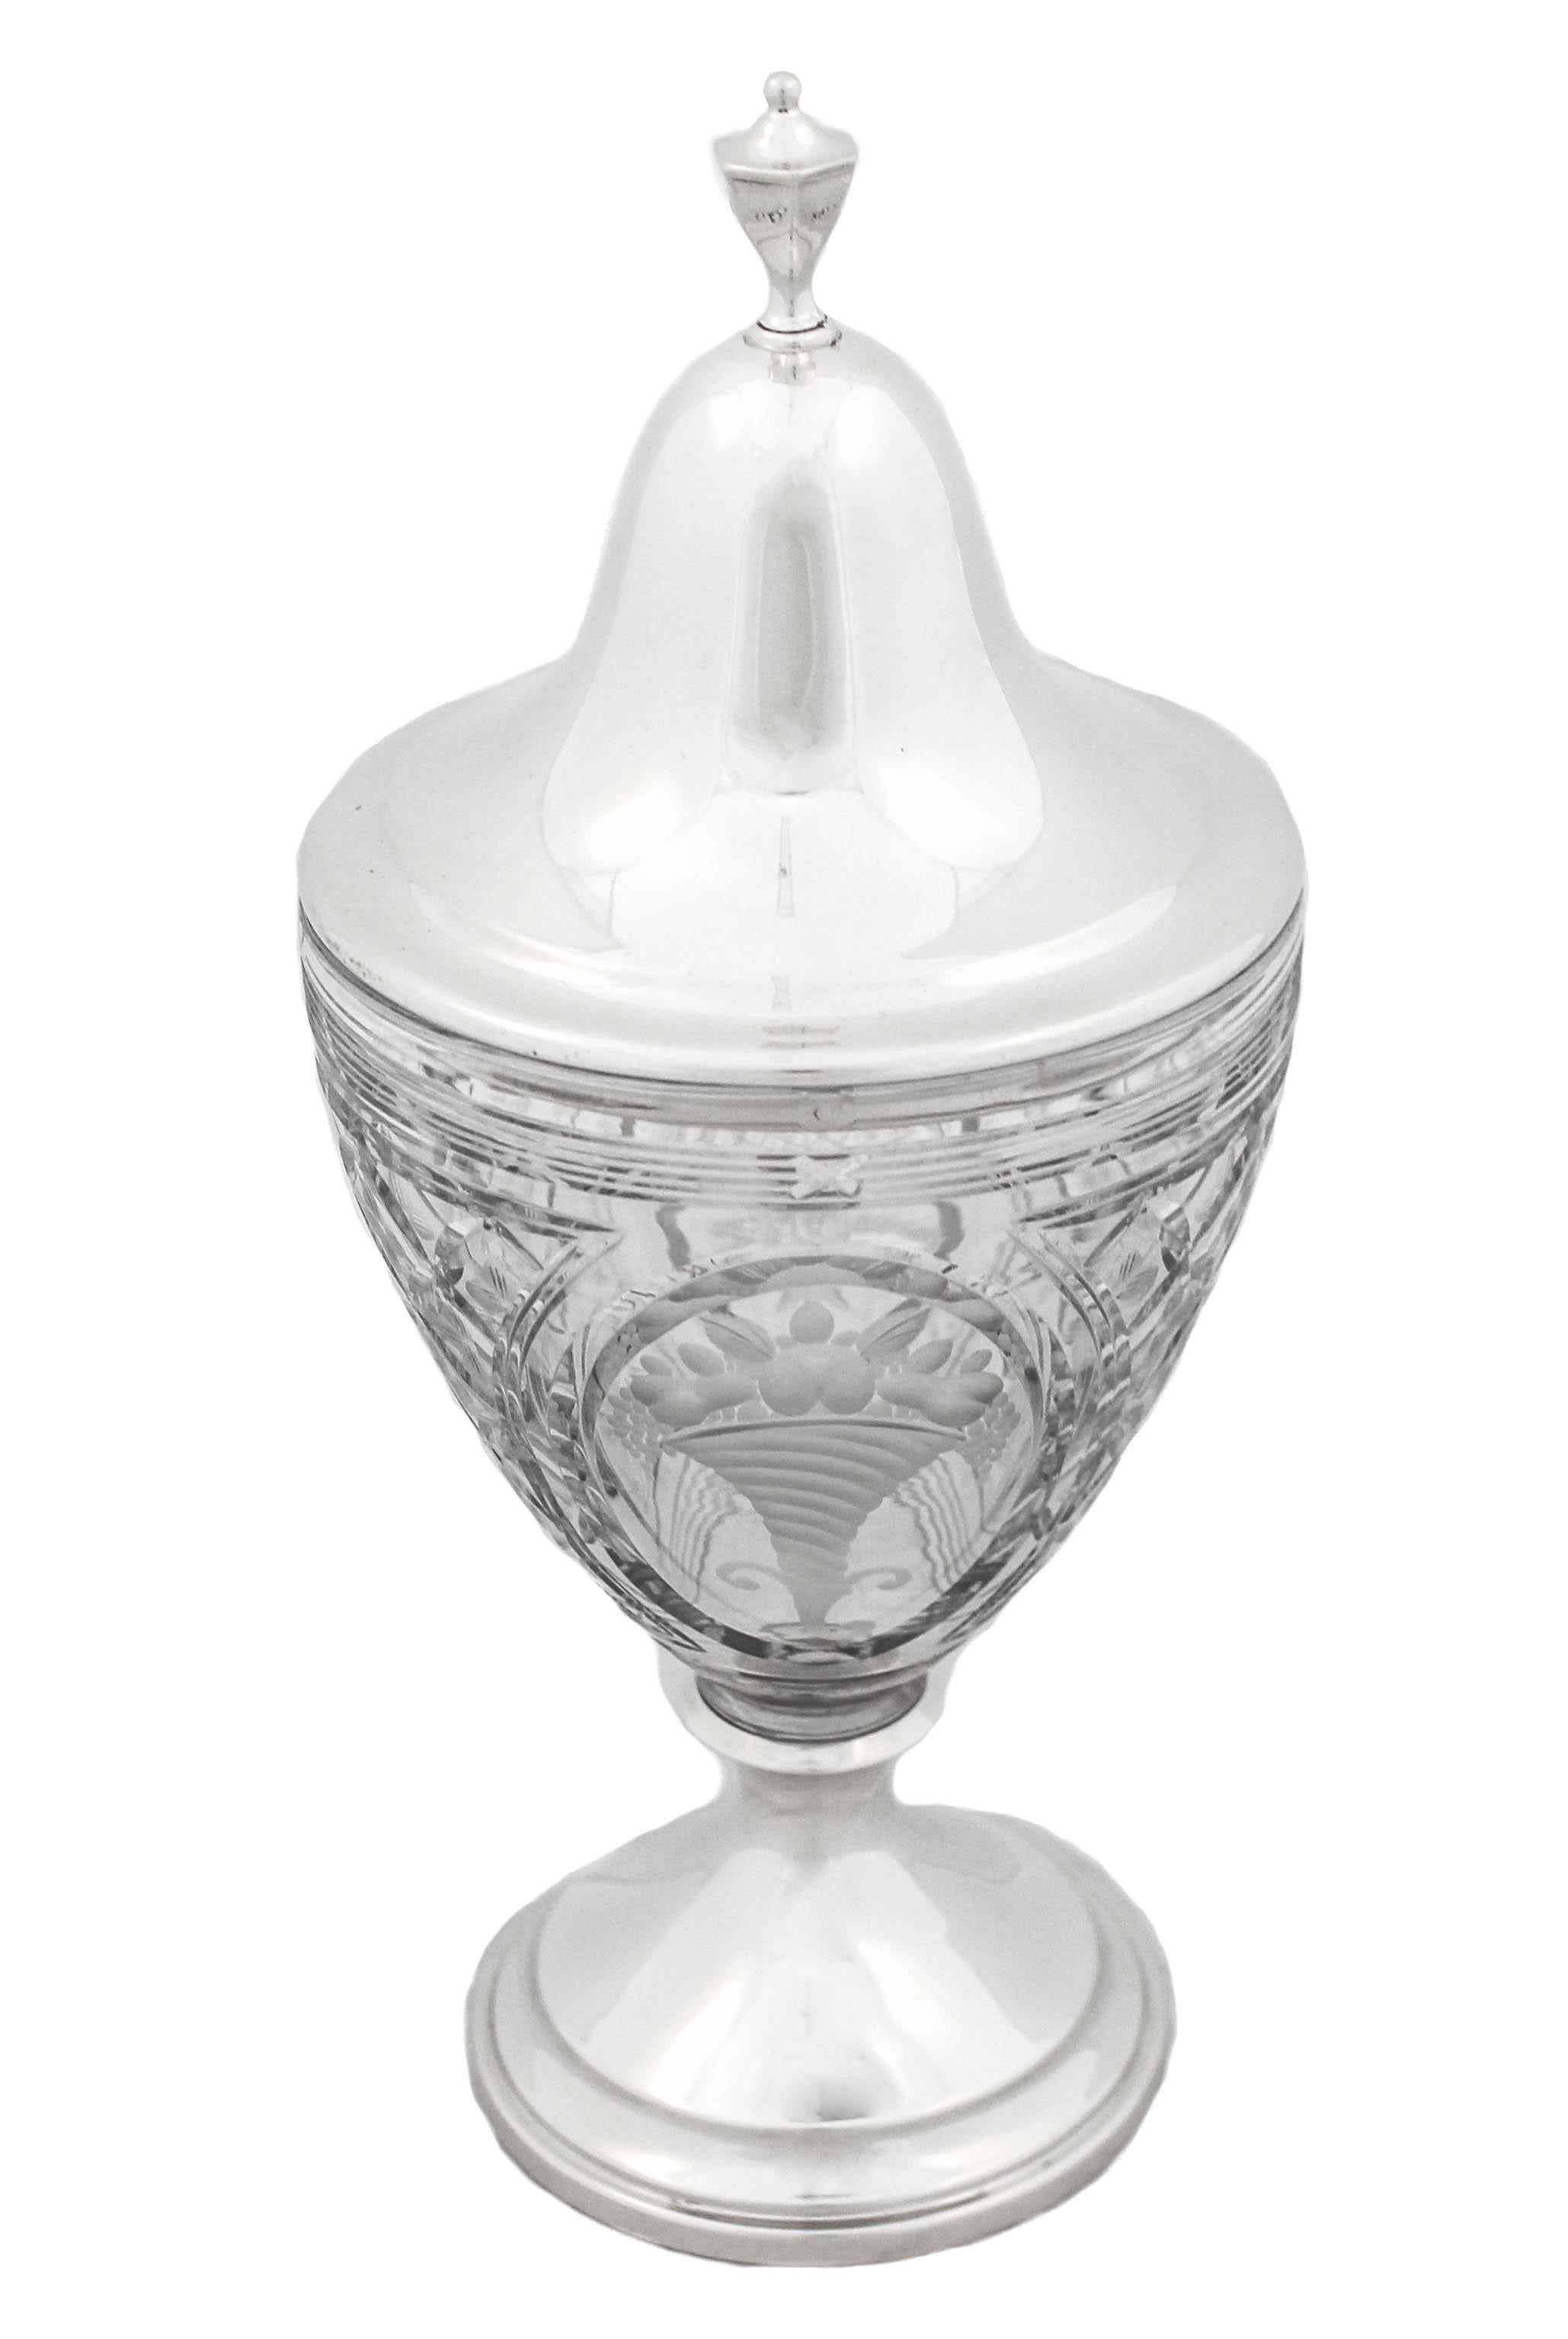 Wir freuen uns, Ihnen diese Urne aus Sterlingsilber und Kristall von Frank Whiting Silver Company anbieten zu können.  Der Sockel und der Deckel sind aus Sterlingsilber, während die Urne aus geschliffenem Glas mit Rautenmuster besteht.  Auf beiden